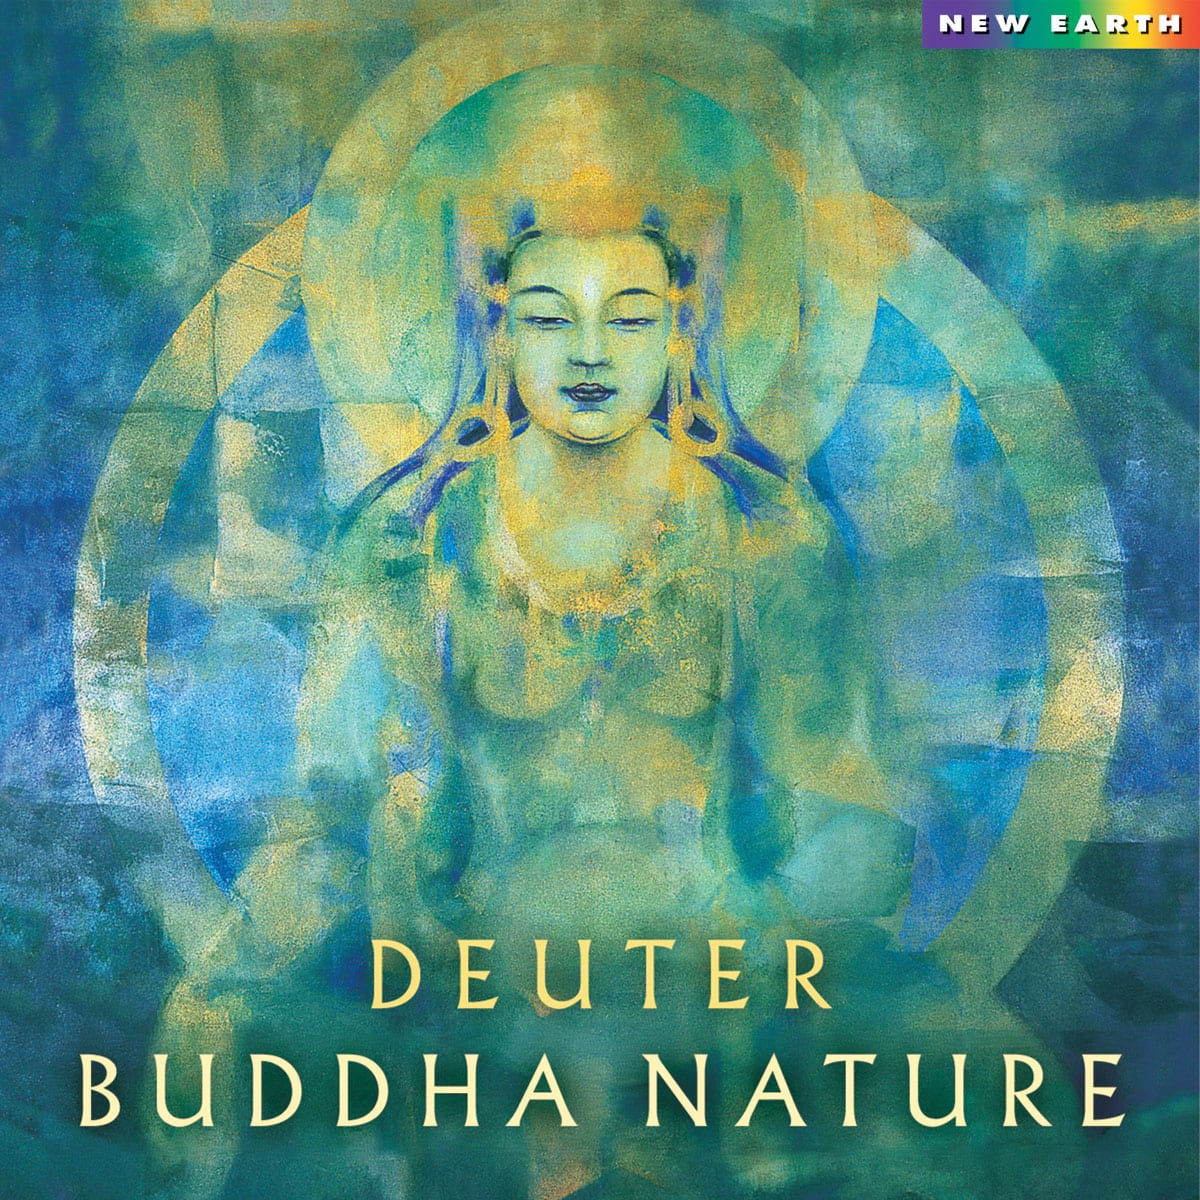 Buddha Nature